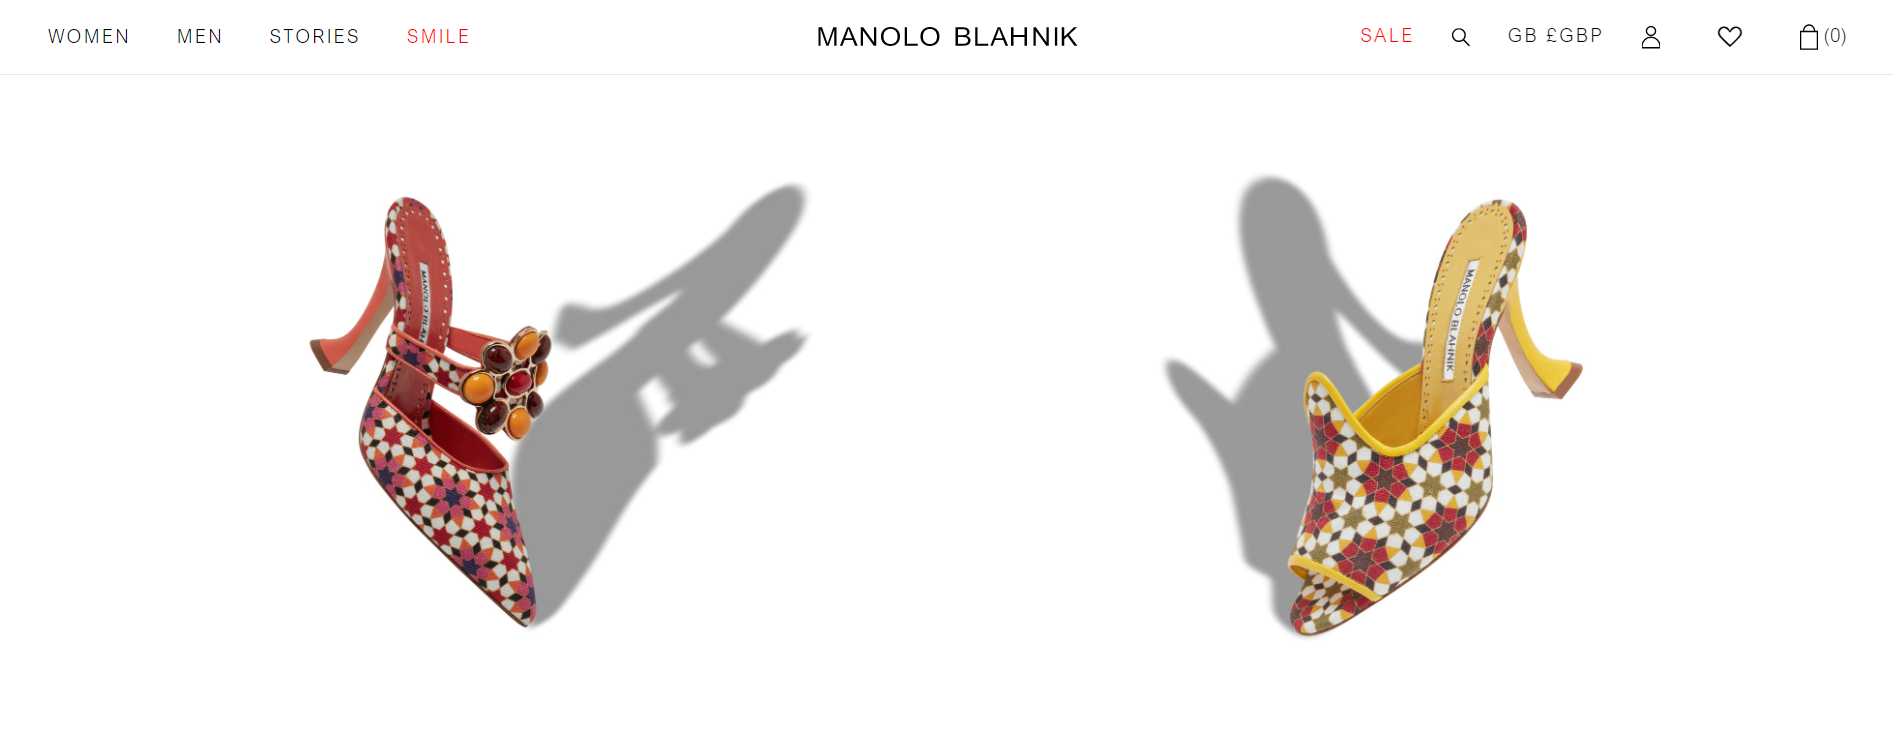 英国奢侈鞋履品牌 Manolo Blahnik 重返纽约，全新旗舰店揭幕